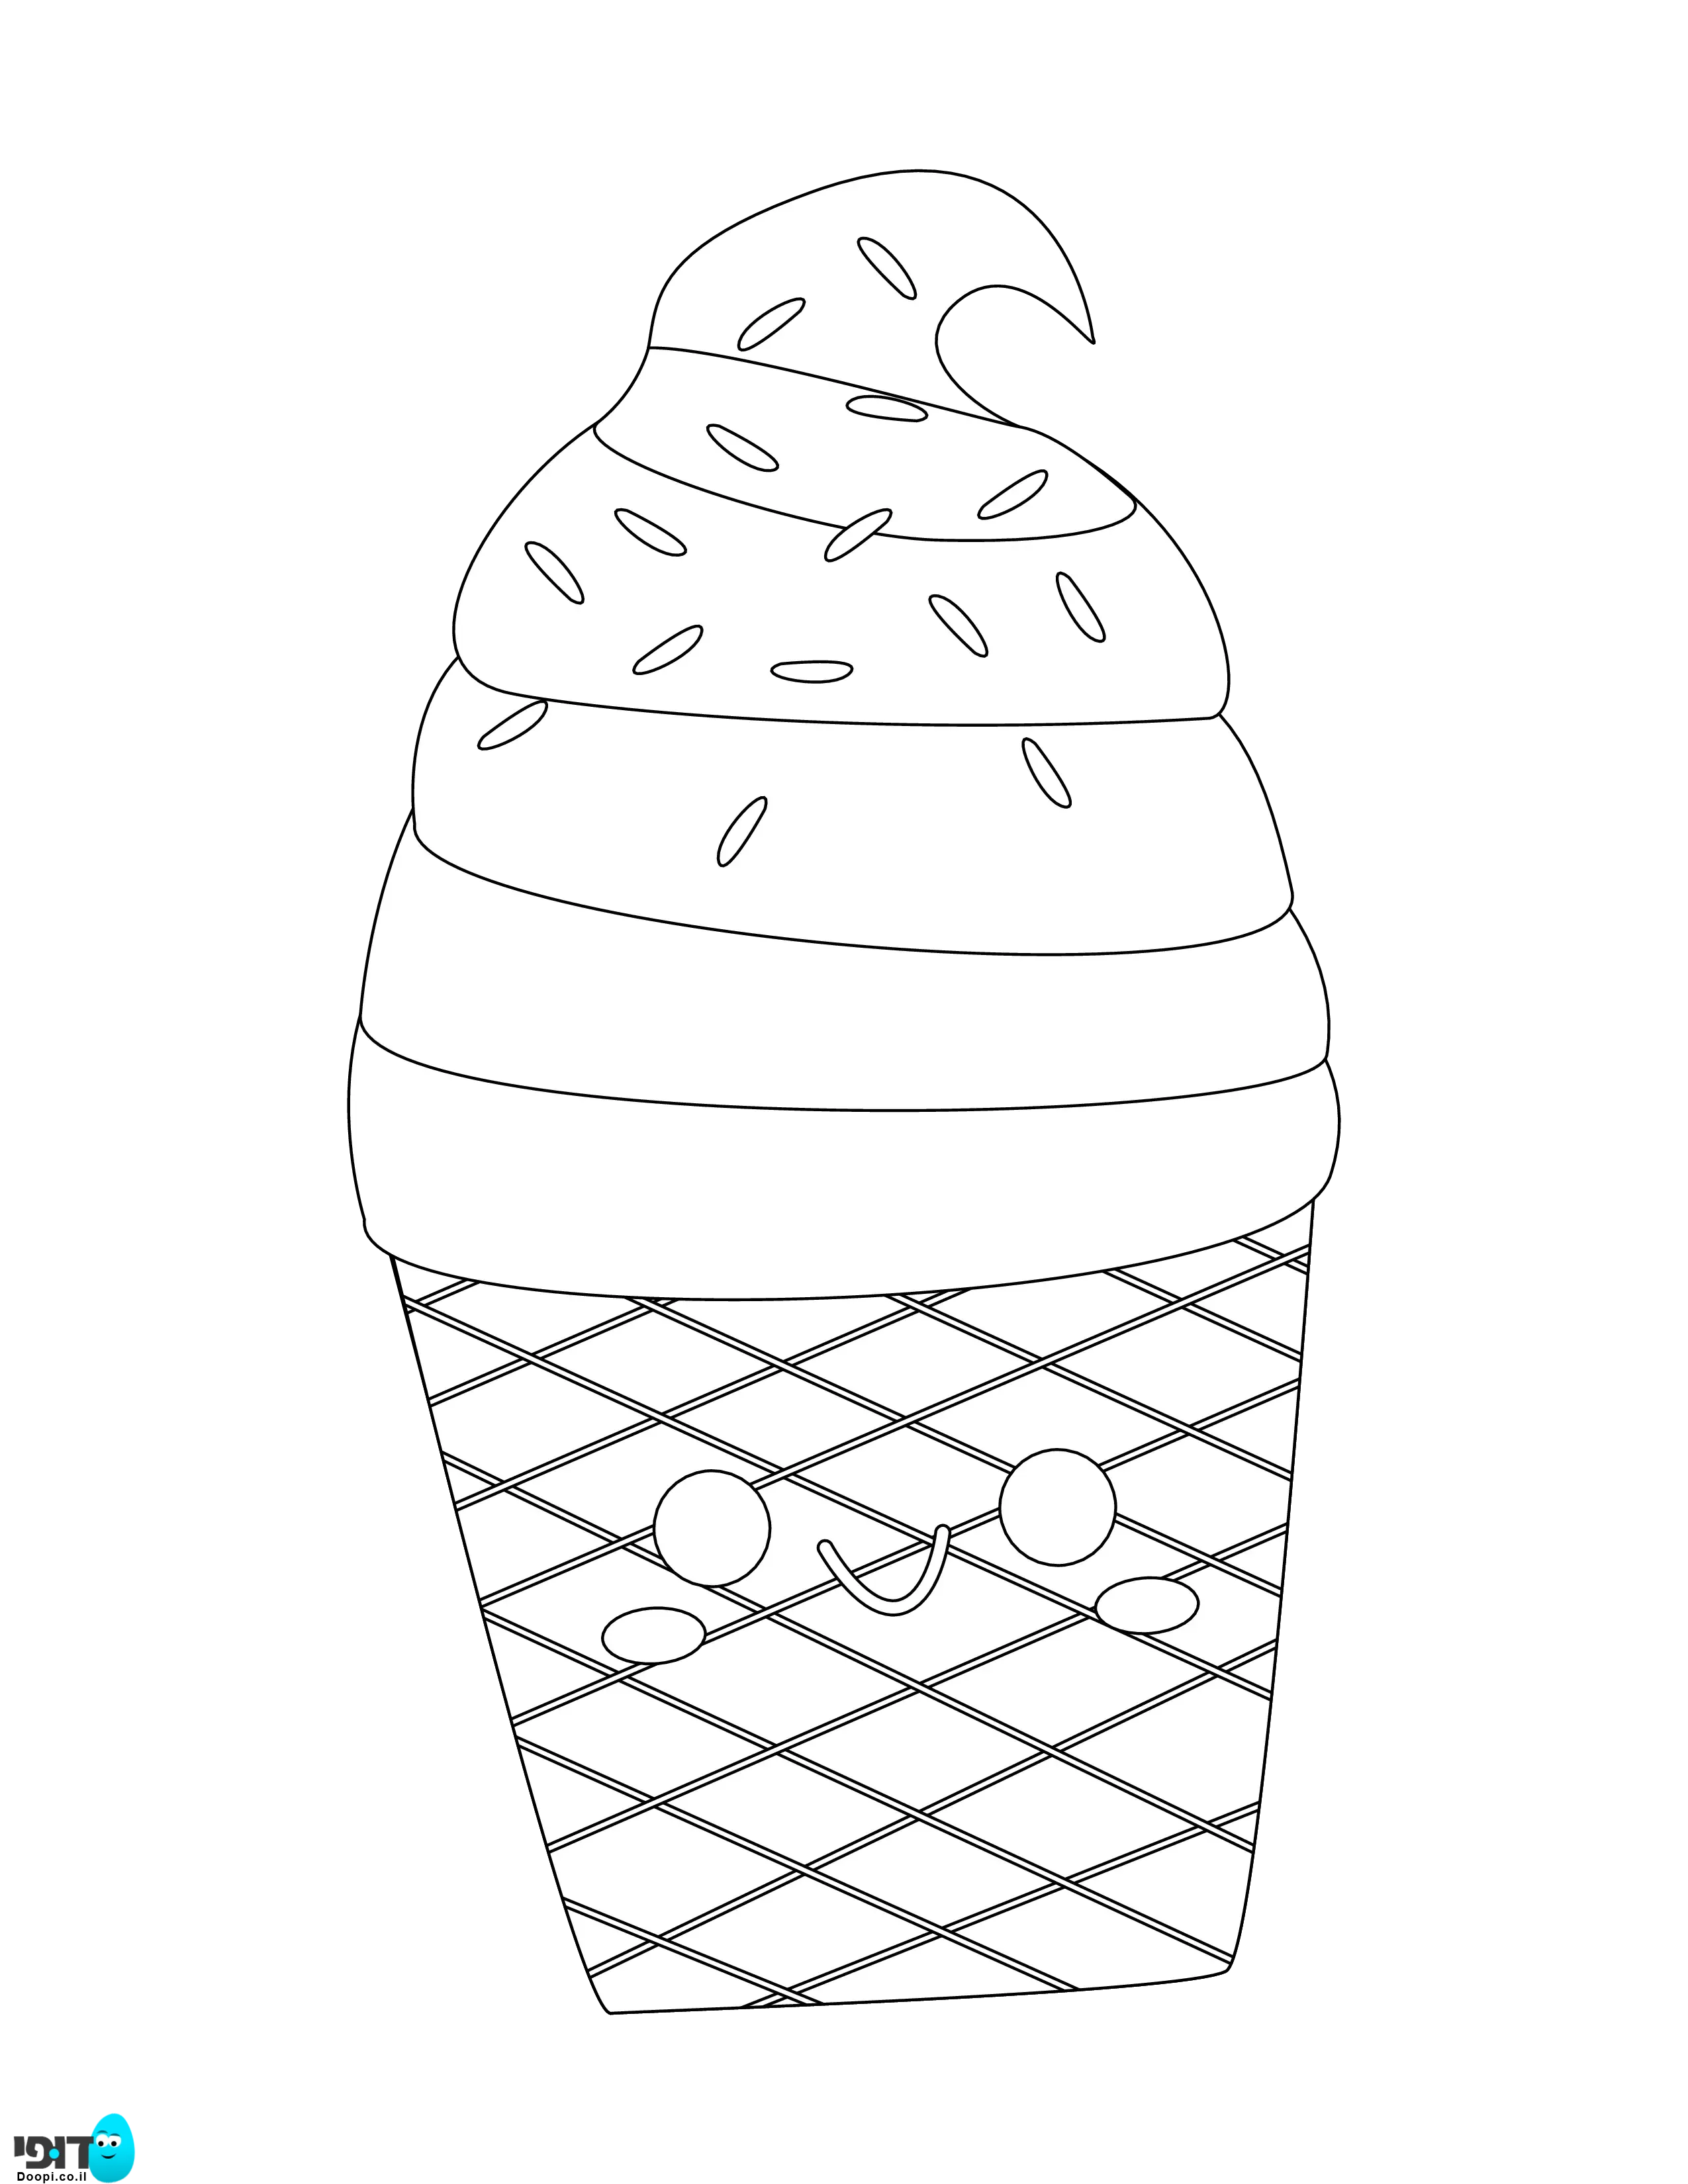 דף צביעה גלידה עם סוכריות